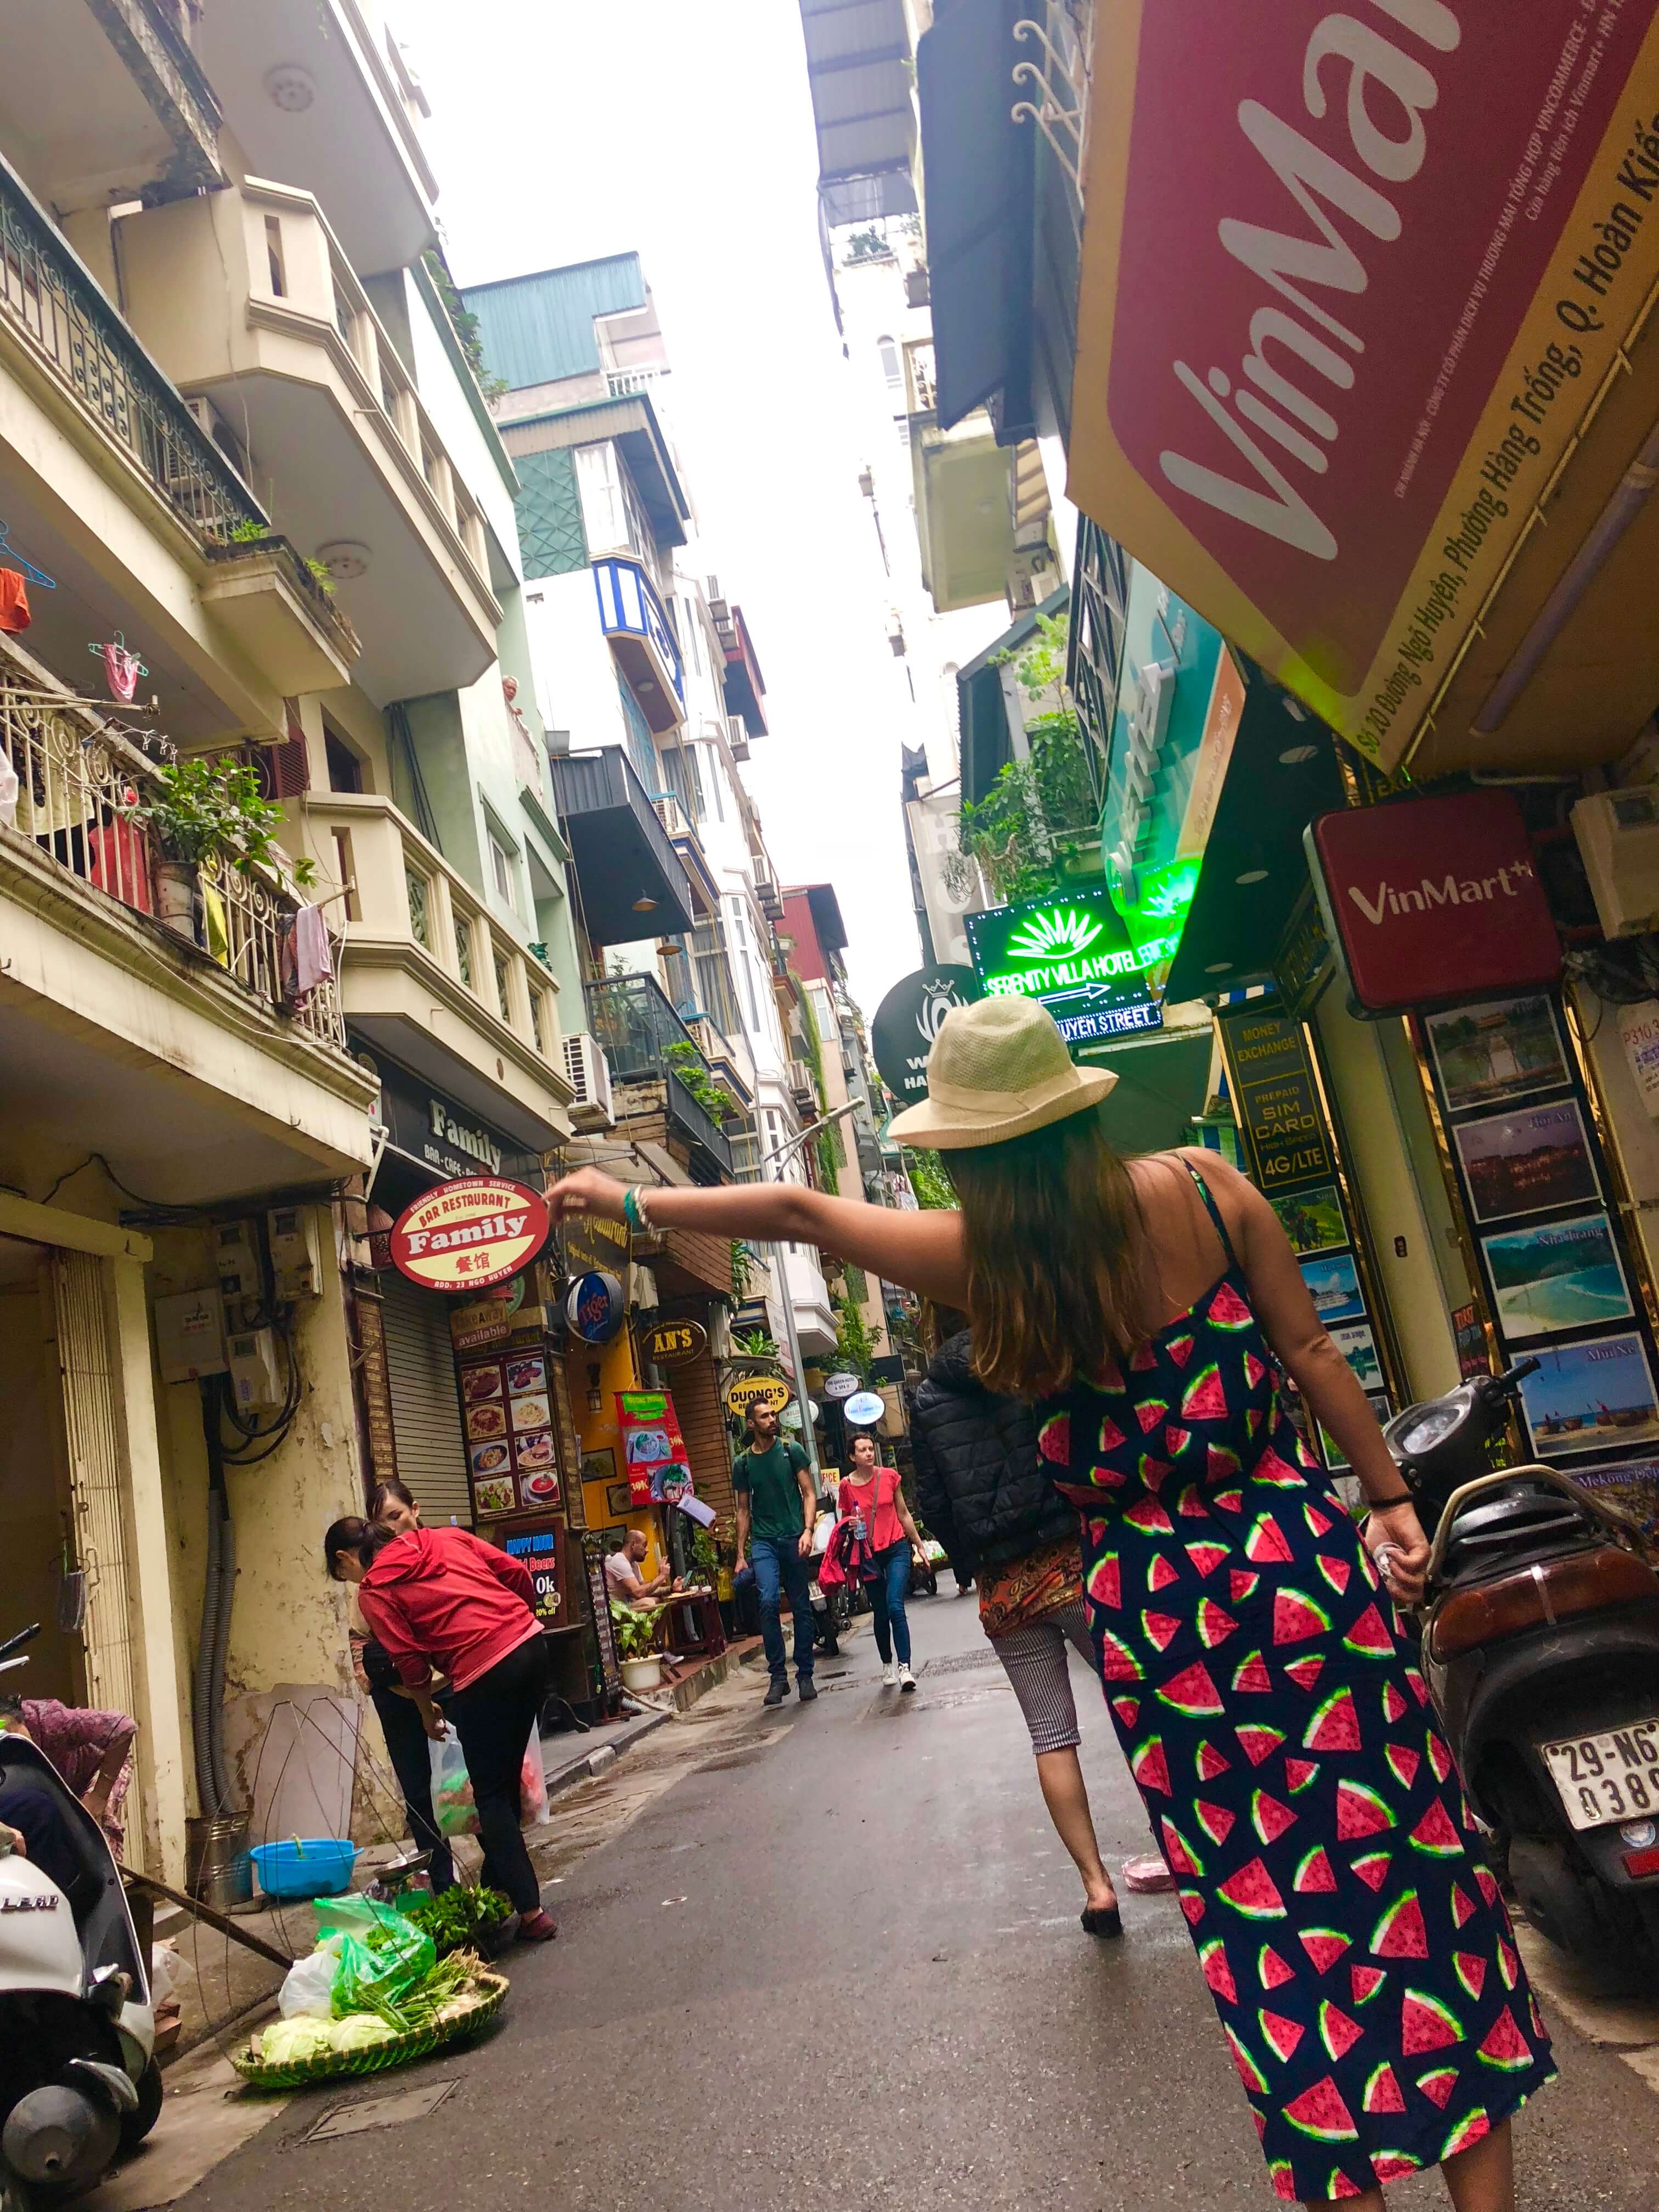 Sugestão de hostel em Hanoi – See you At Lily’s hostel